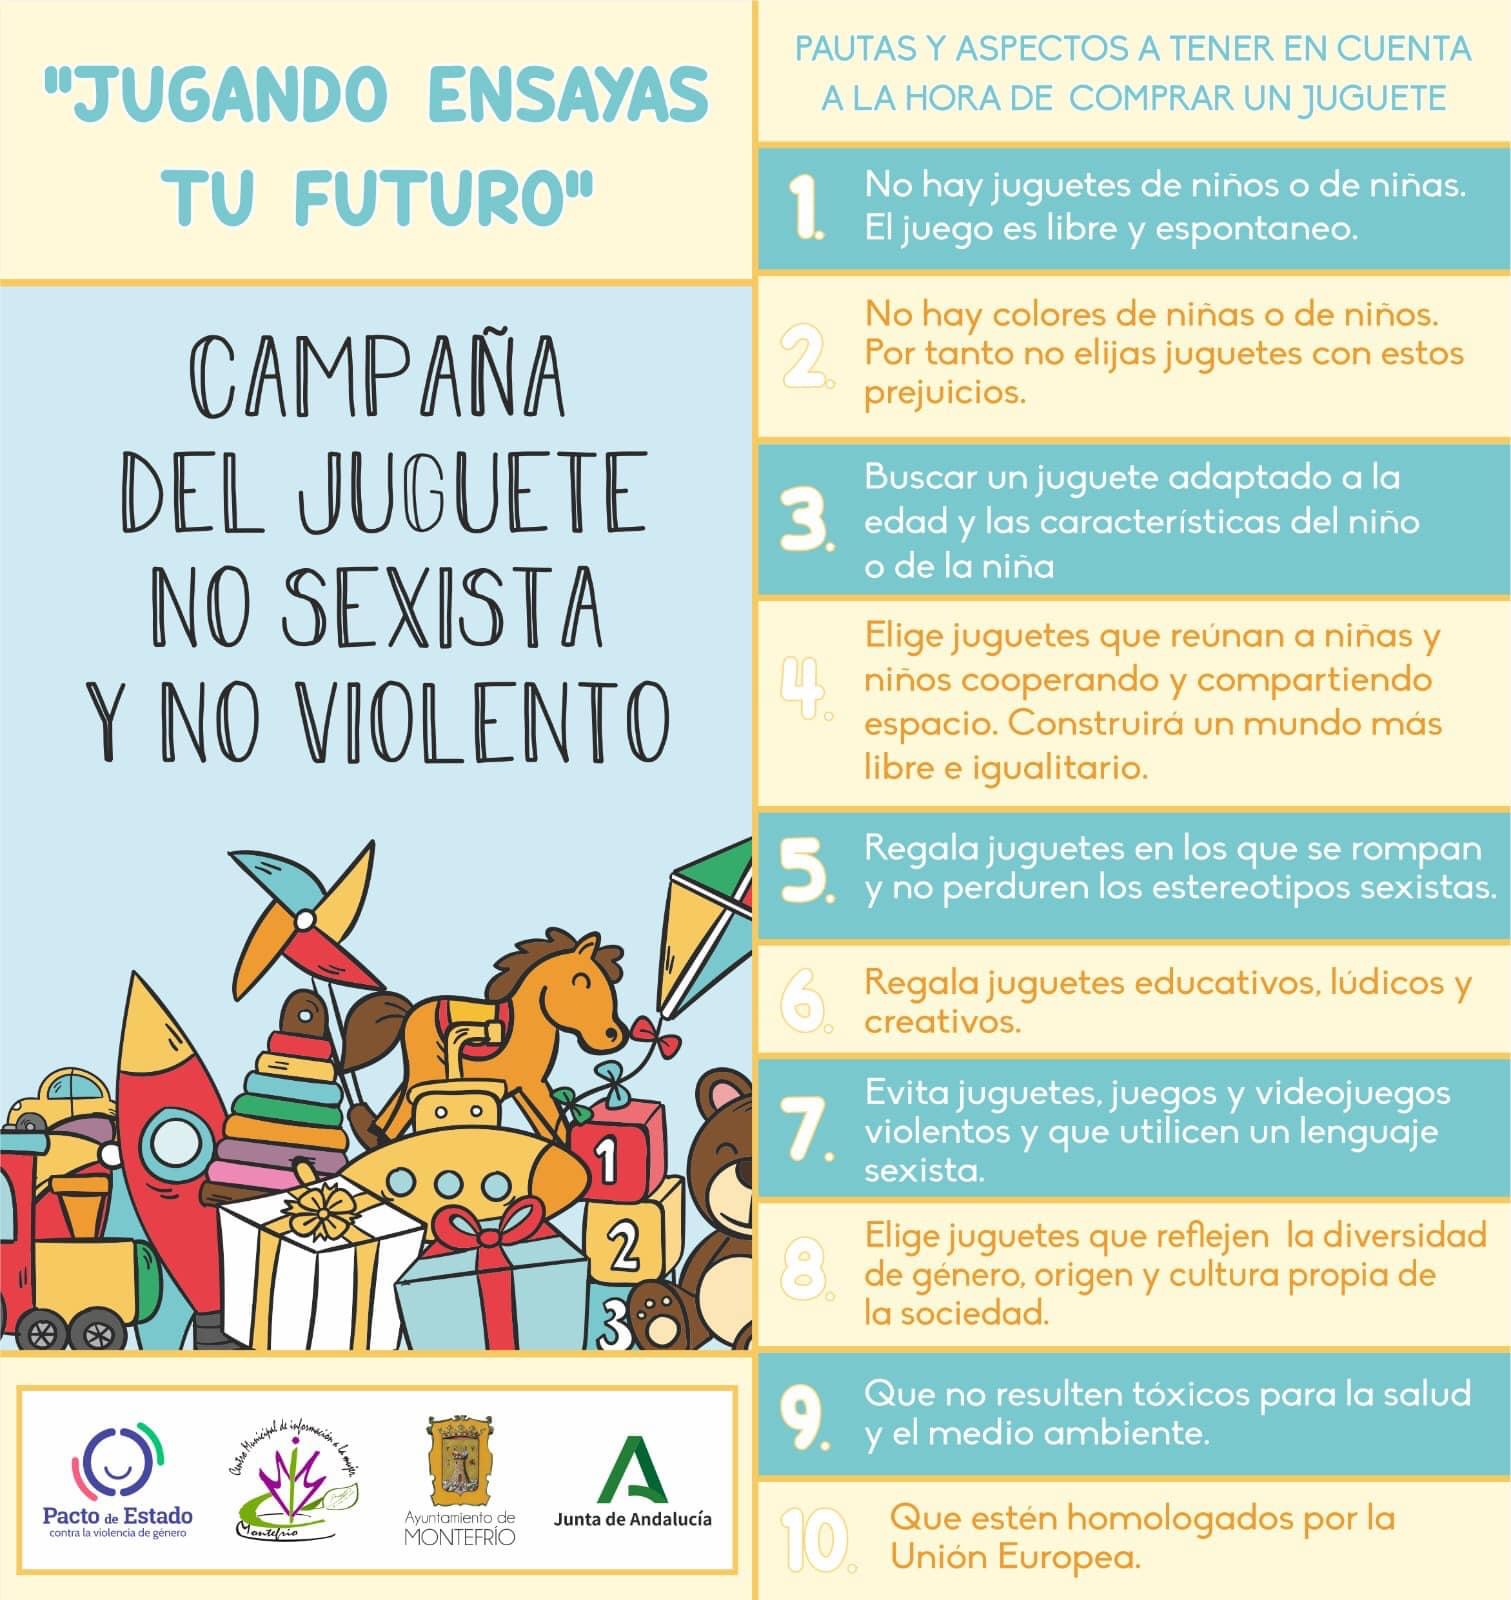 Montefrío lanza una campaña para promocionar el juguete no sexista ni violento en estas fiestas